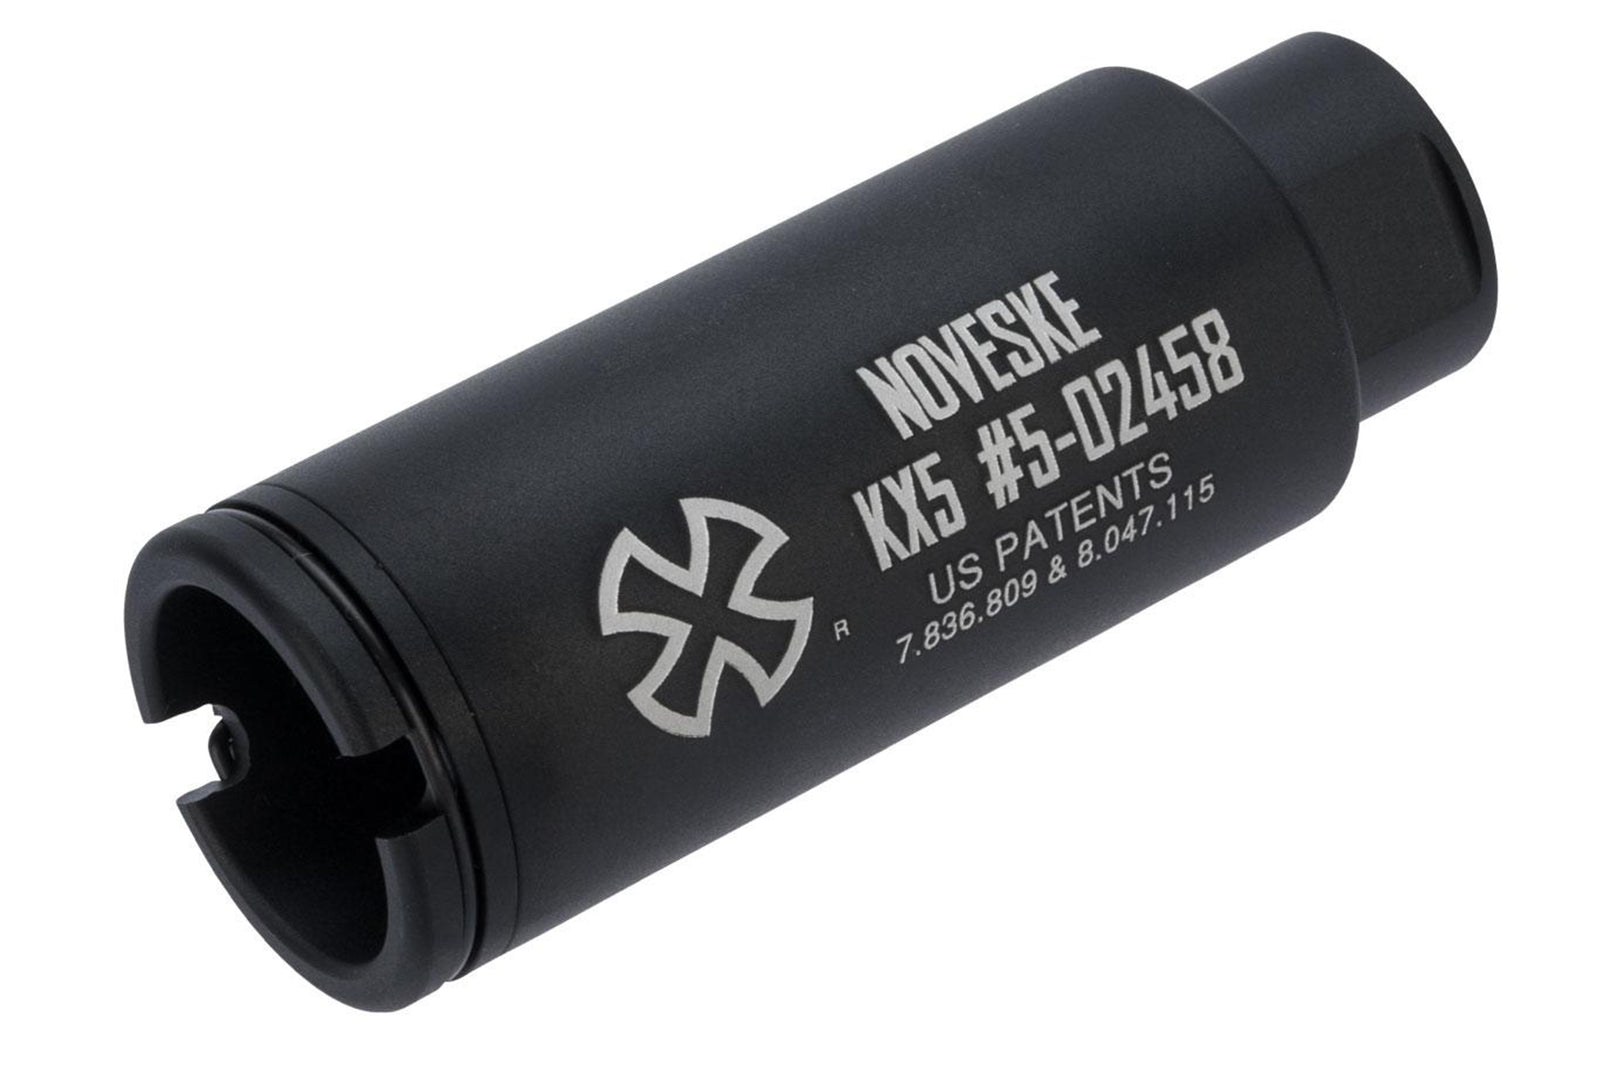 SOCOM Gear Noveske Licensed KX5 Sound Amplifying Flash Hider for Airsoft Rifles 14mm negative